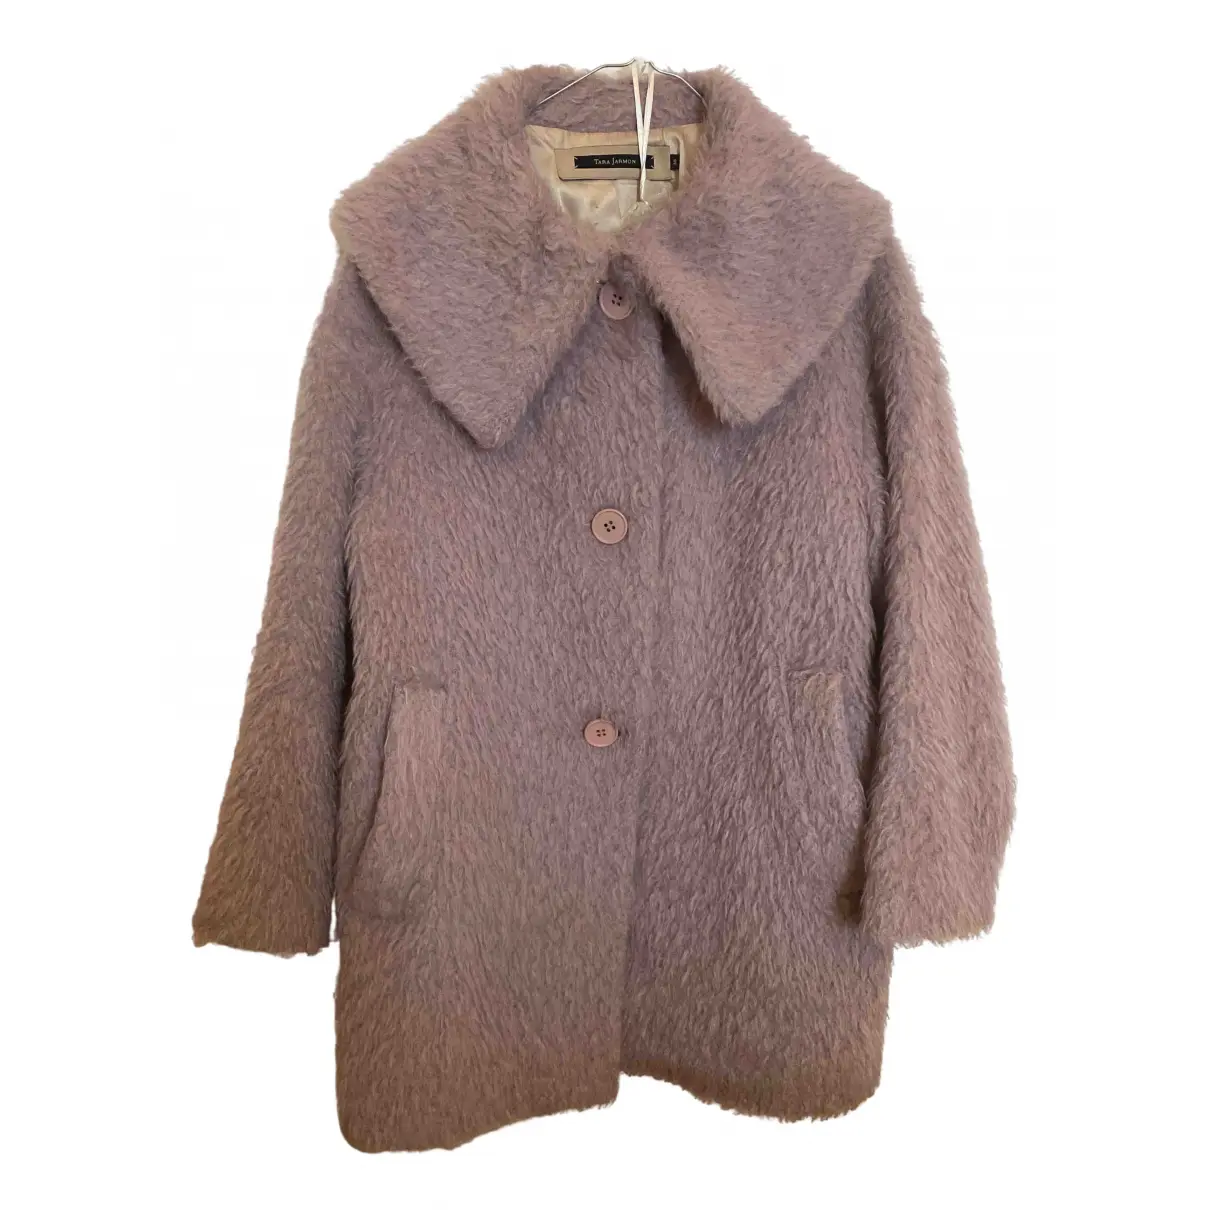 Wool coat Tara Jarmon